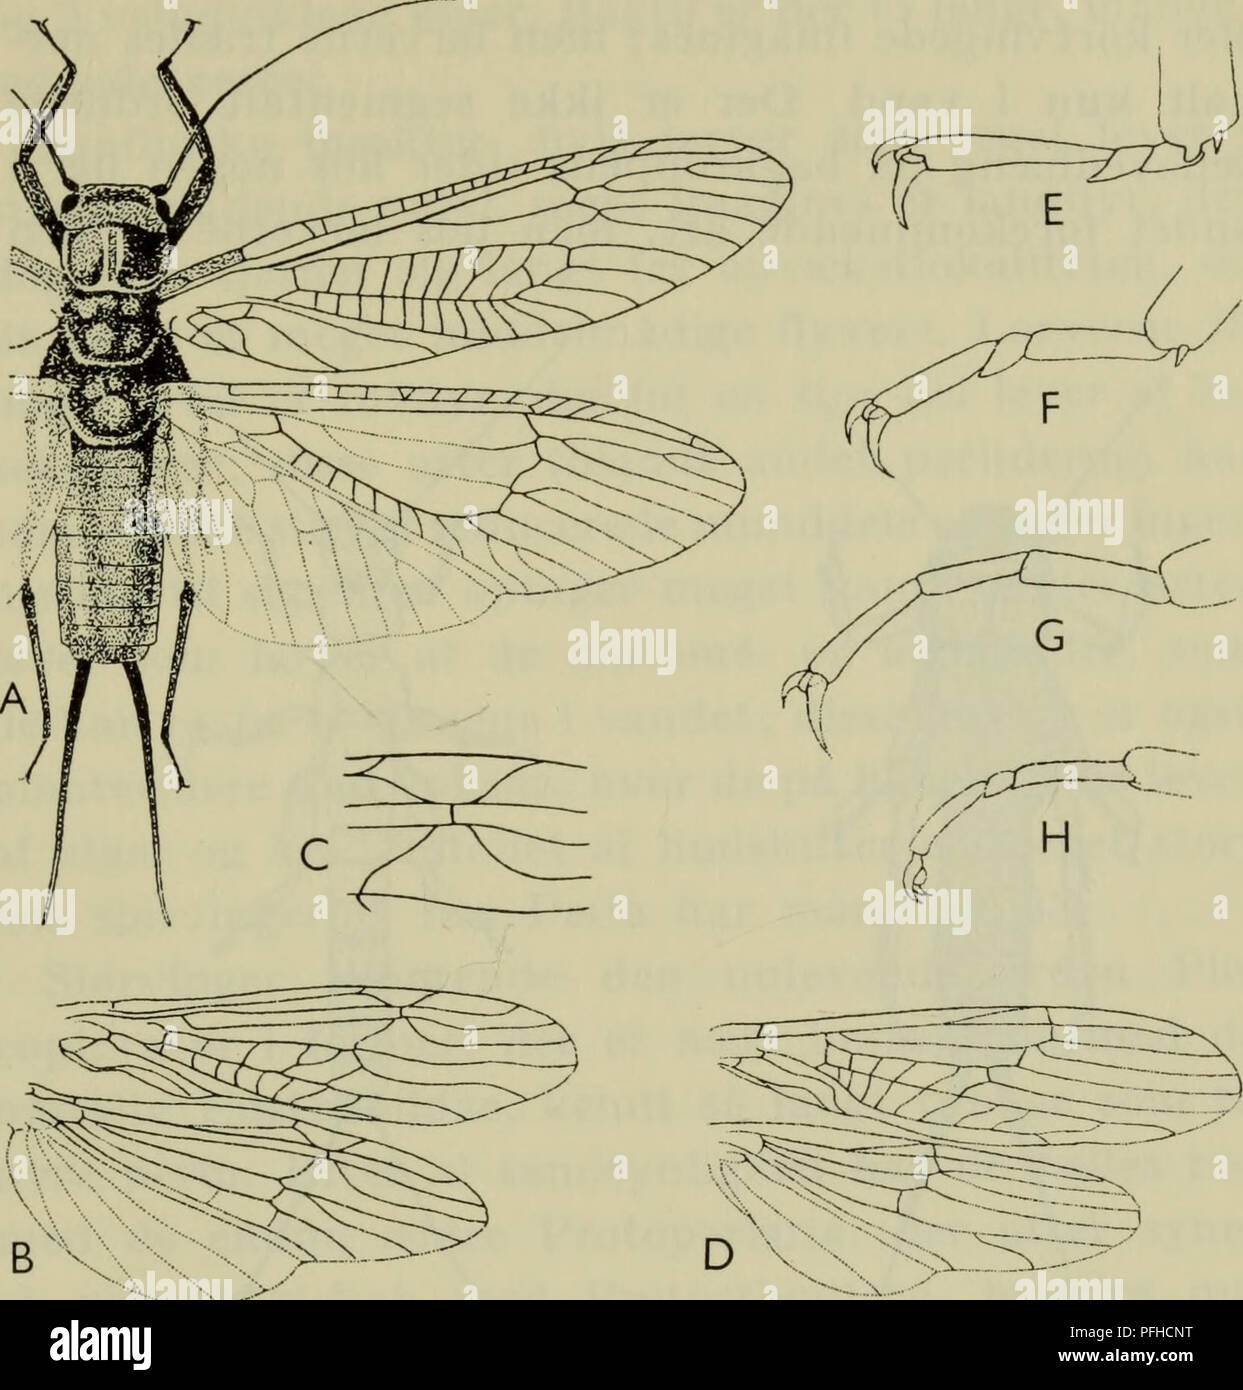 . Danmarks fauna; illustrerede haandbøger su den danske dyreverden... 225. Maiale. 82. Slørvinger. Una perla; B vinger af Nemura; C detalje io per- vingen af Nemura; D Vinger af Leuctra; dom af Perla (E), Gapnia (F), Taeniopteryx (G) og Nemura (H). eller vingeløse immagina, først og fremmest blandt hannerne. Benene er ret kraftige med 3-leddede fød- der og kløer 2. Bagkroppen er 11-leddet, uomini det sidste led er staerkt reduceret og skjult. Gercerne er lange mangeleddede og hos de fleste familier; hos enkelte er de staerkt reducerede og uleddede og står delvis ho parringens tjeneste. Noget egentligt p Foto Stock